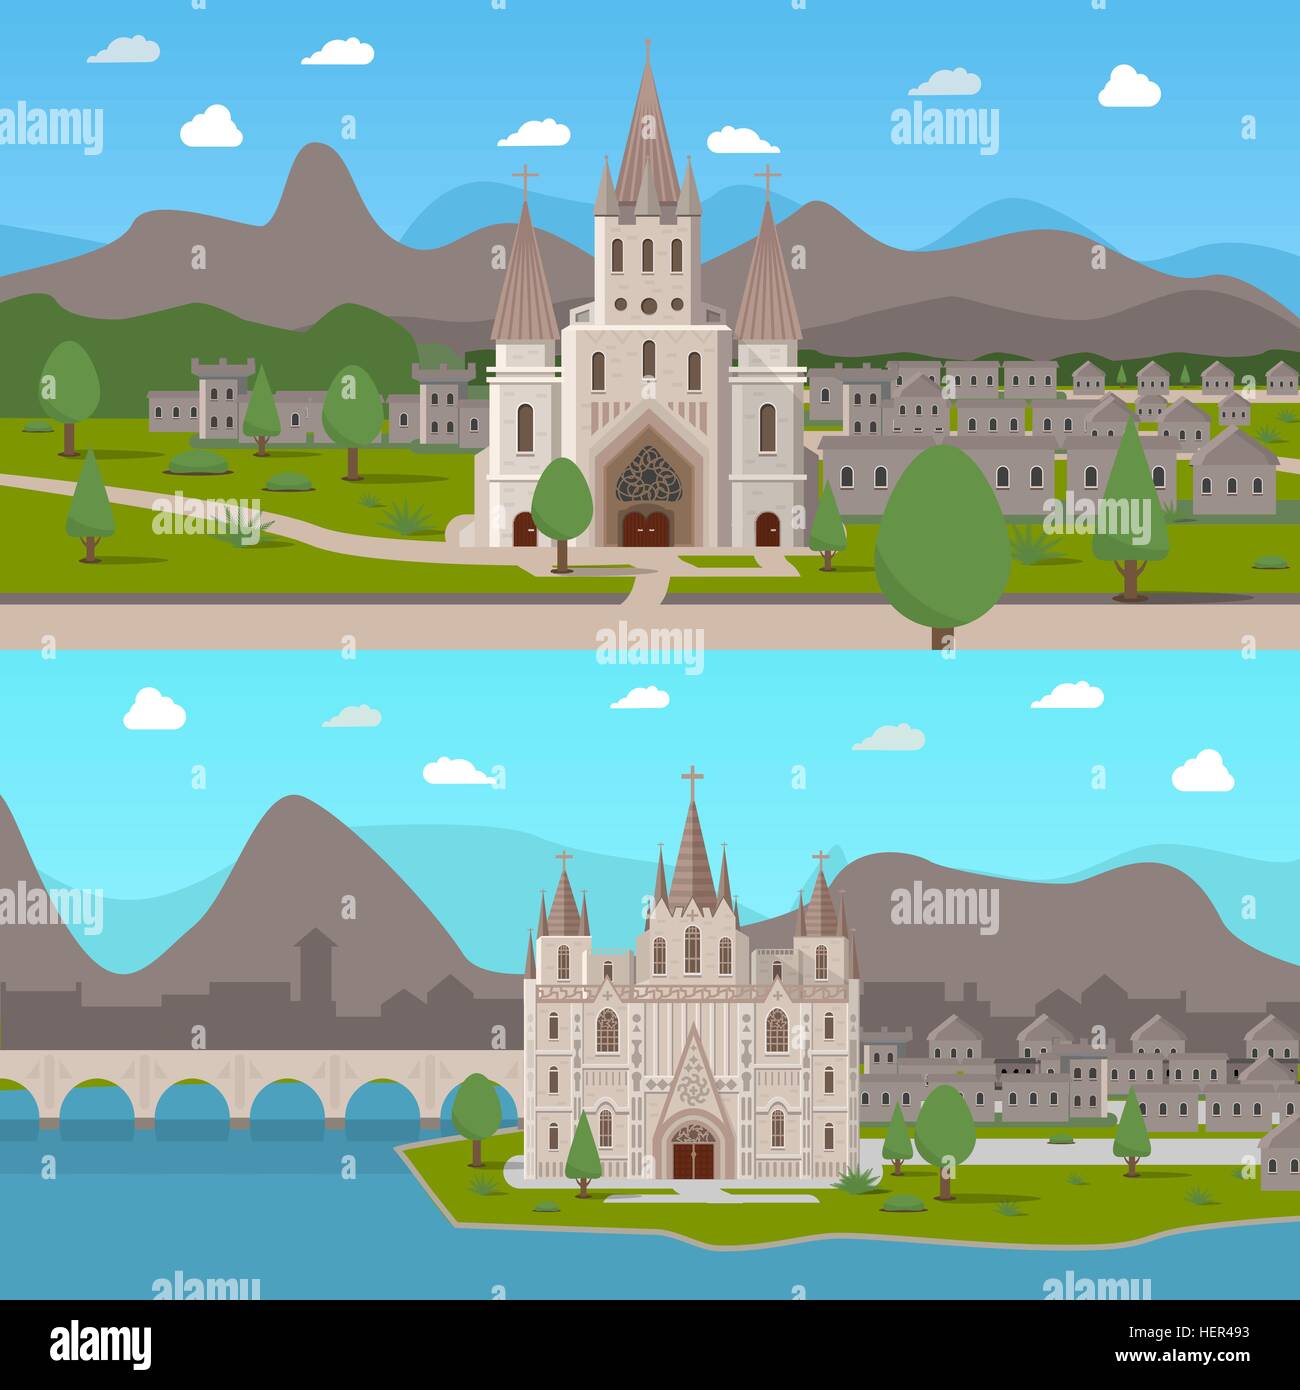 Anciens Temples médiévaux Compositions horizontales. Deux compositions horizontales avec des temples de style gothique médiéval sur cartoon Illustration de Vecteur